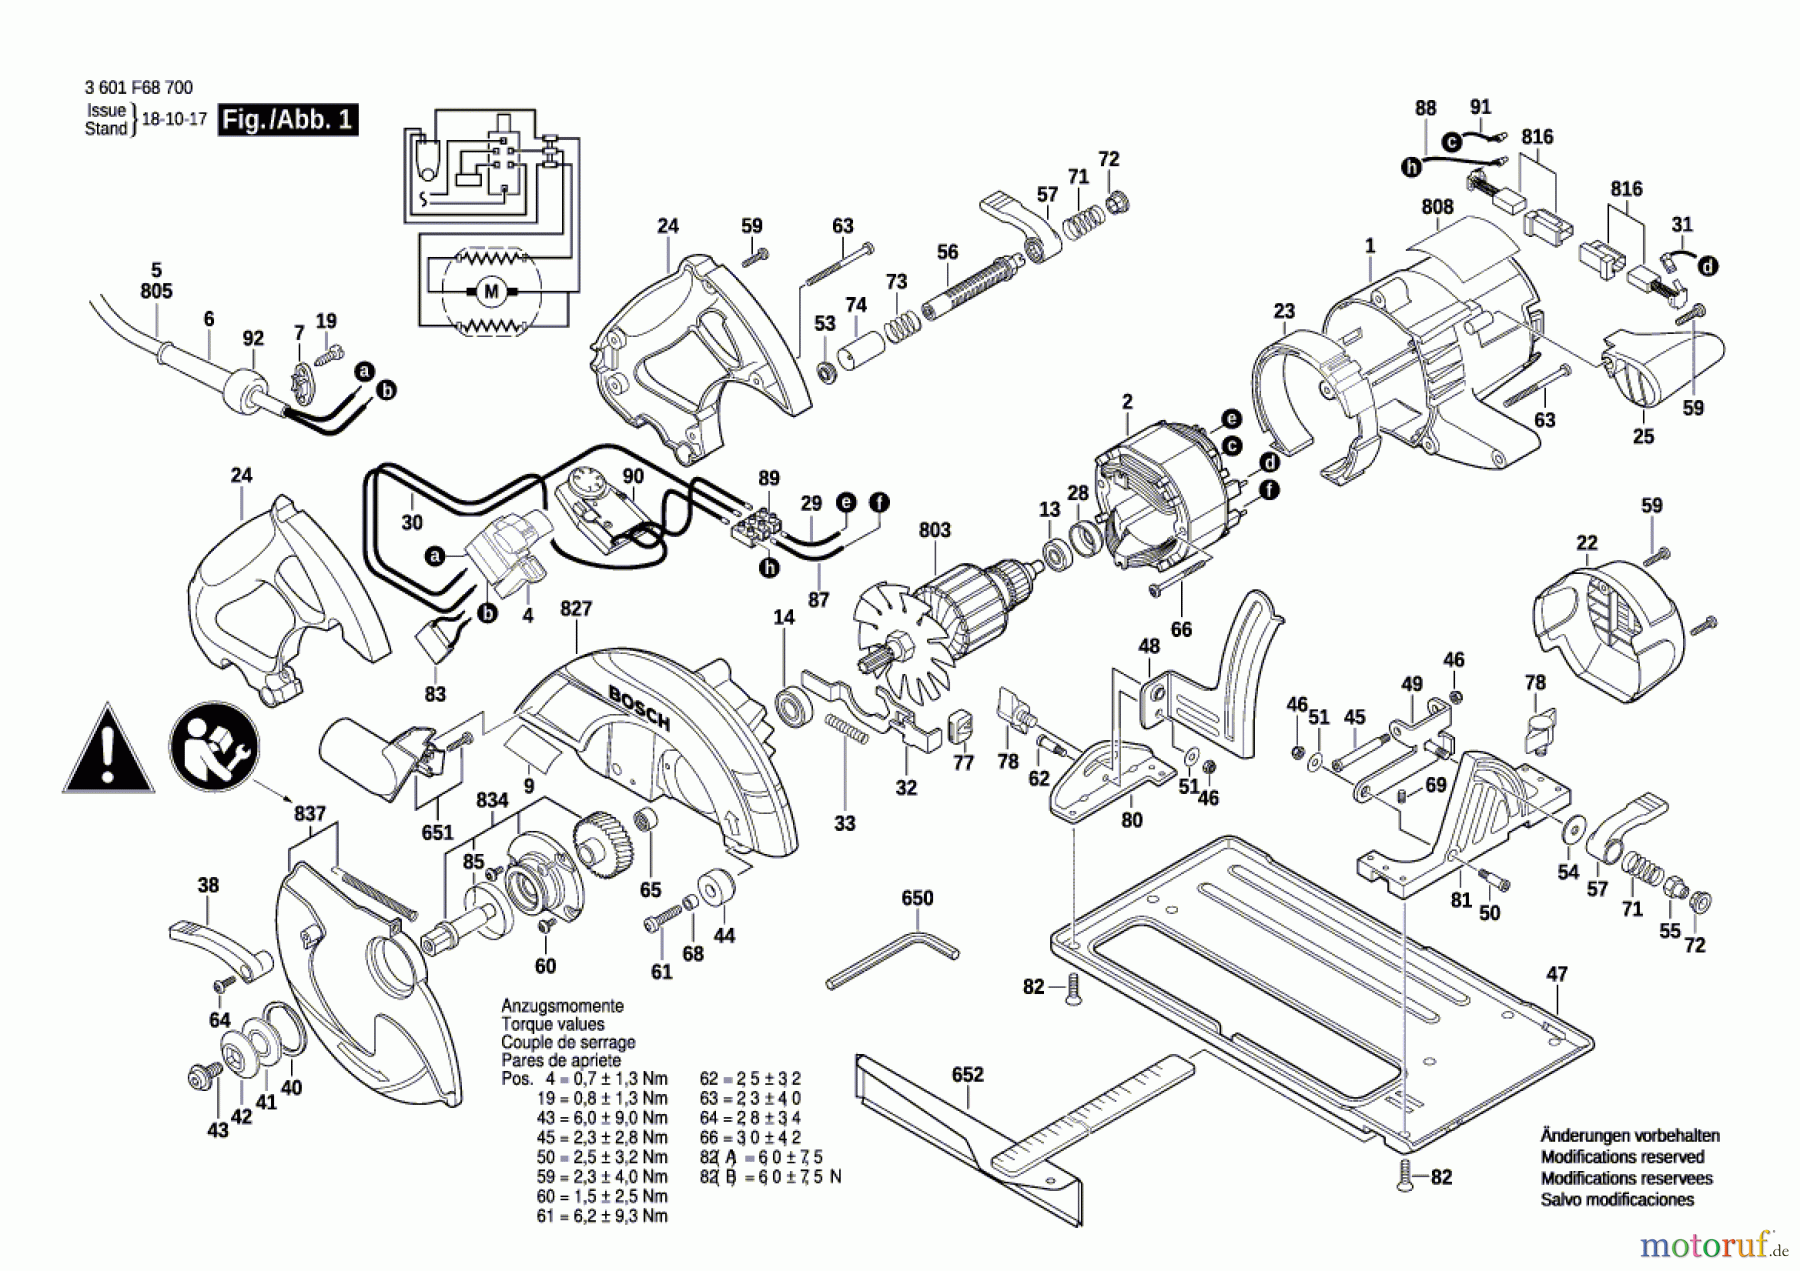  Bosch Werkzeug Handkreissäge GKS 65 CE Seite 1